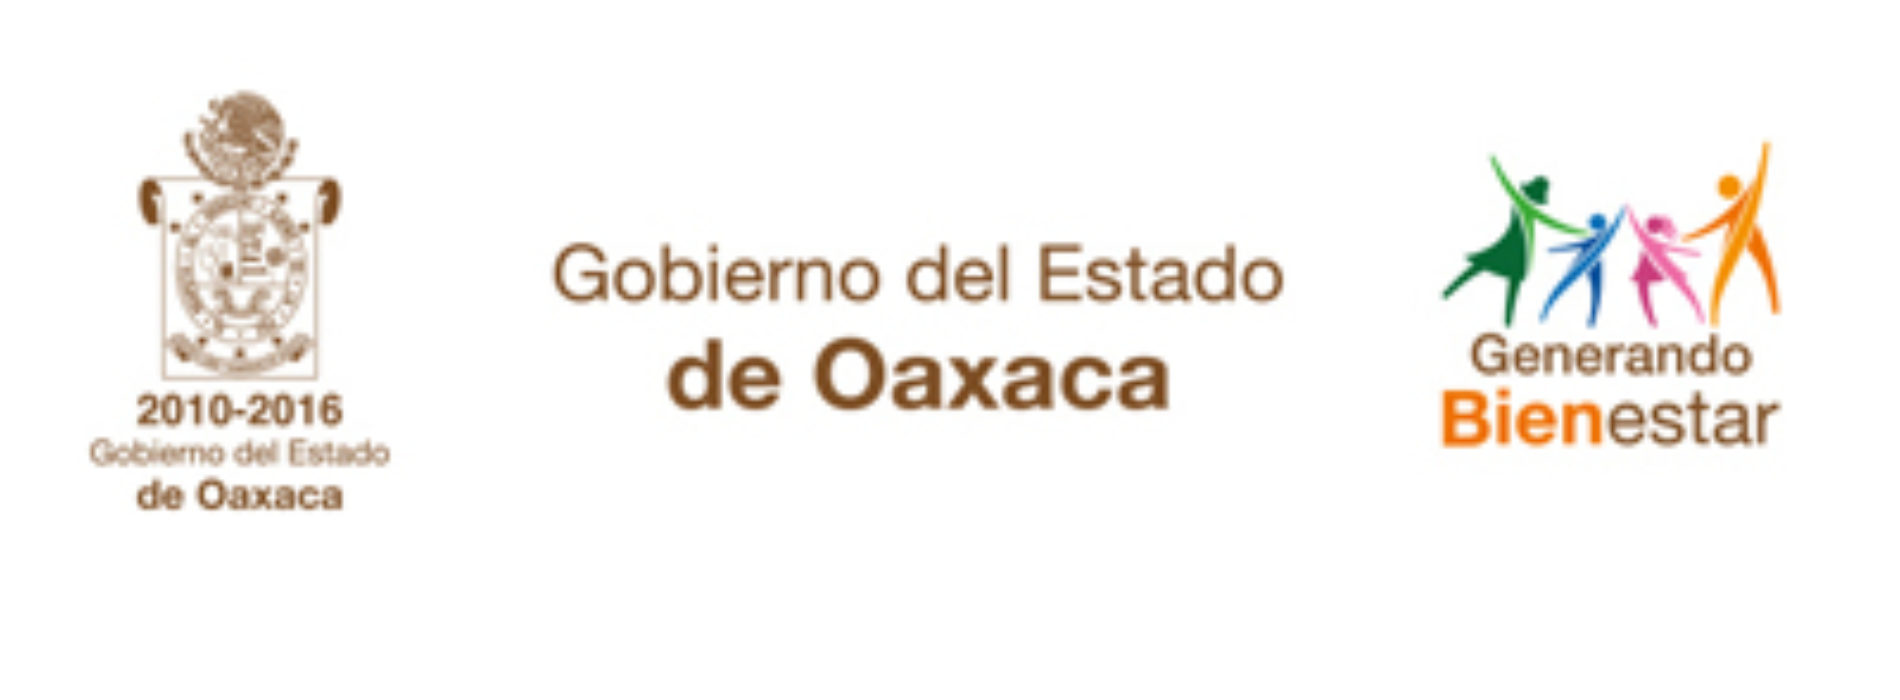 Persistirán temperaturas frías durante la mañana y noche en Oaxaca